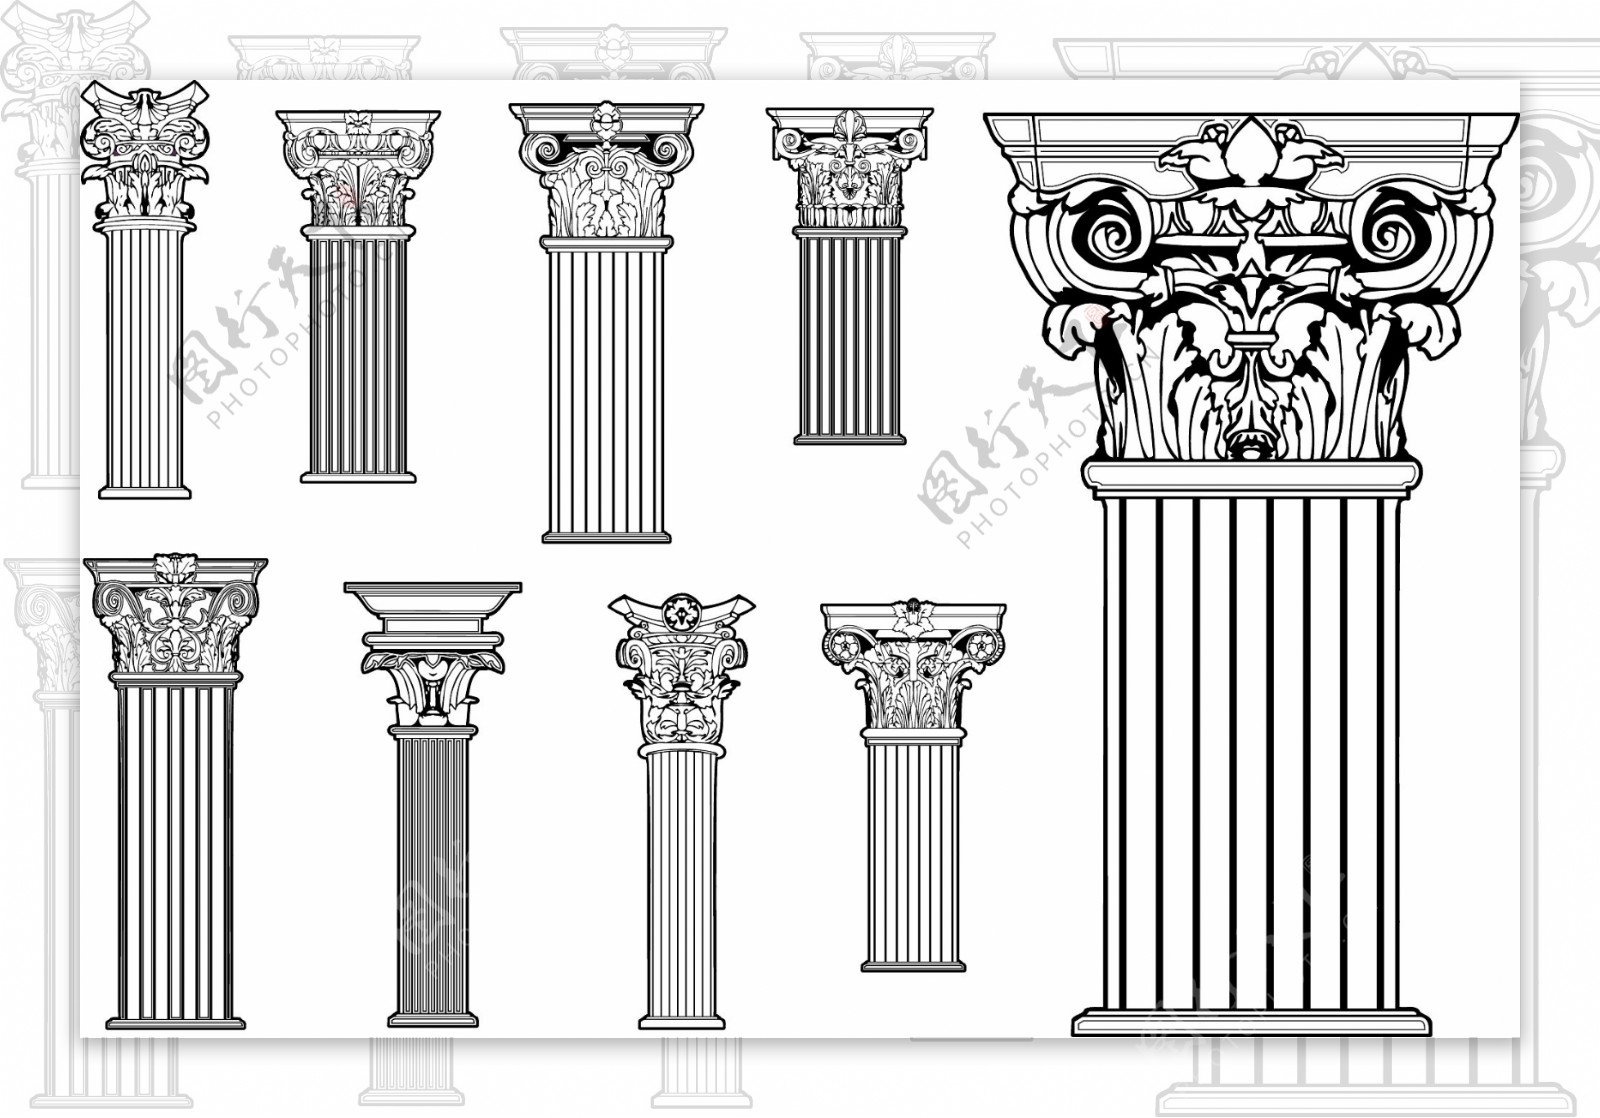 罗马柱科林斯柱式